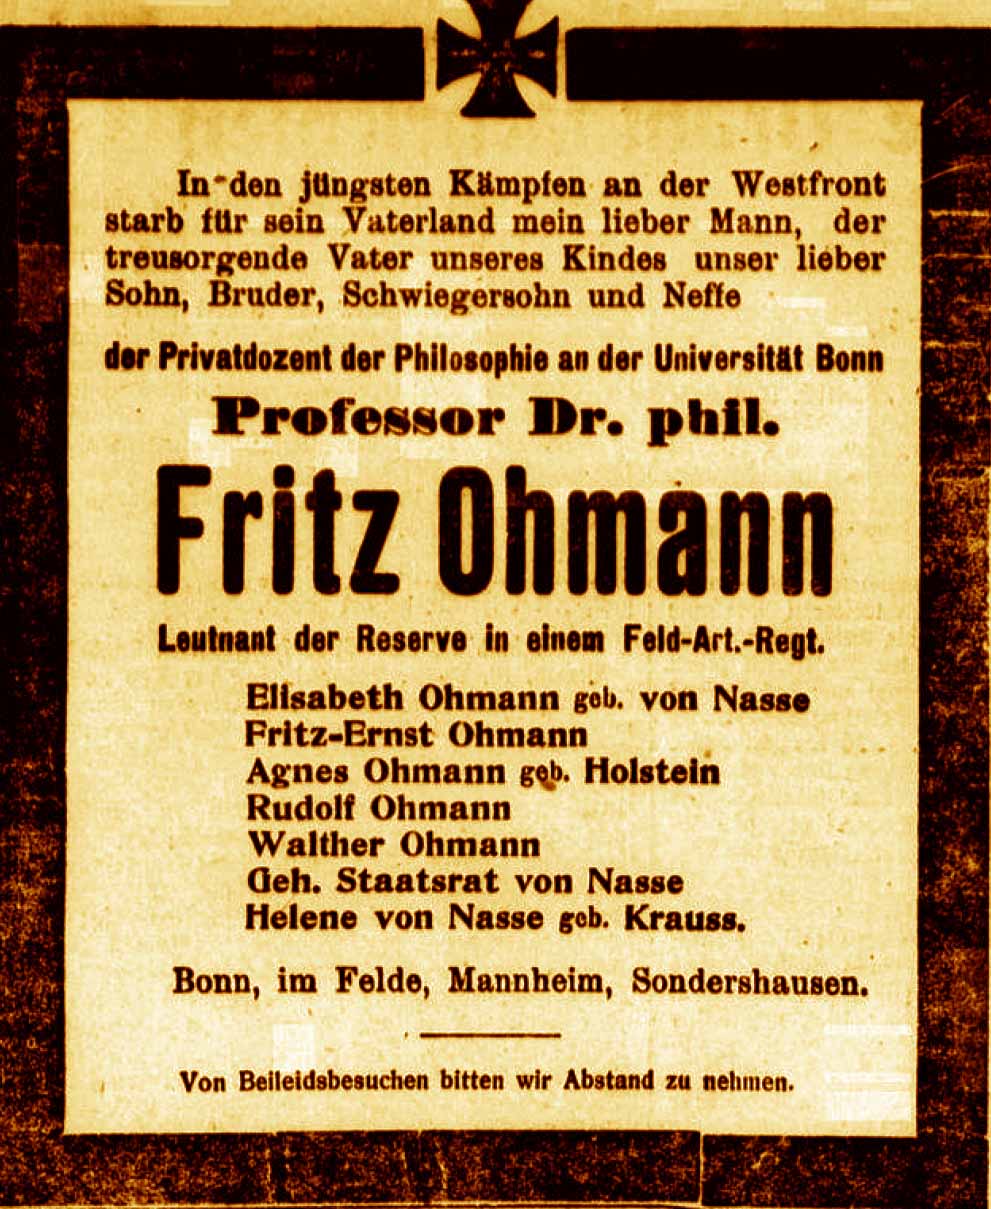 Anzeige in der Bonner Zeitung vom 17. April 1918